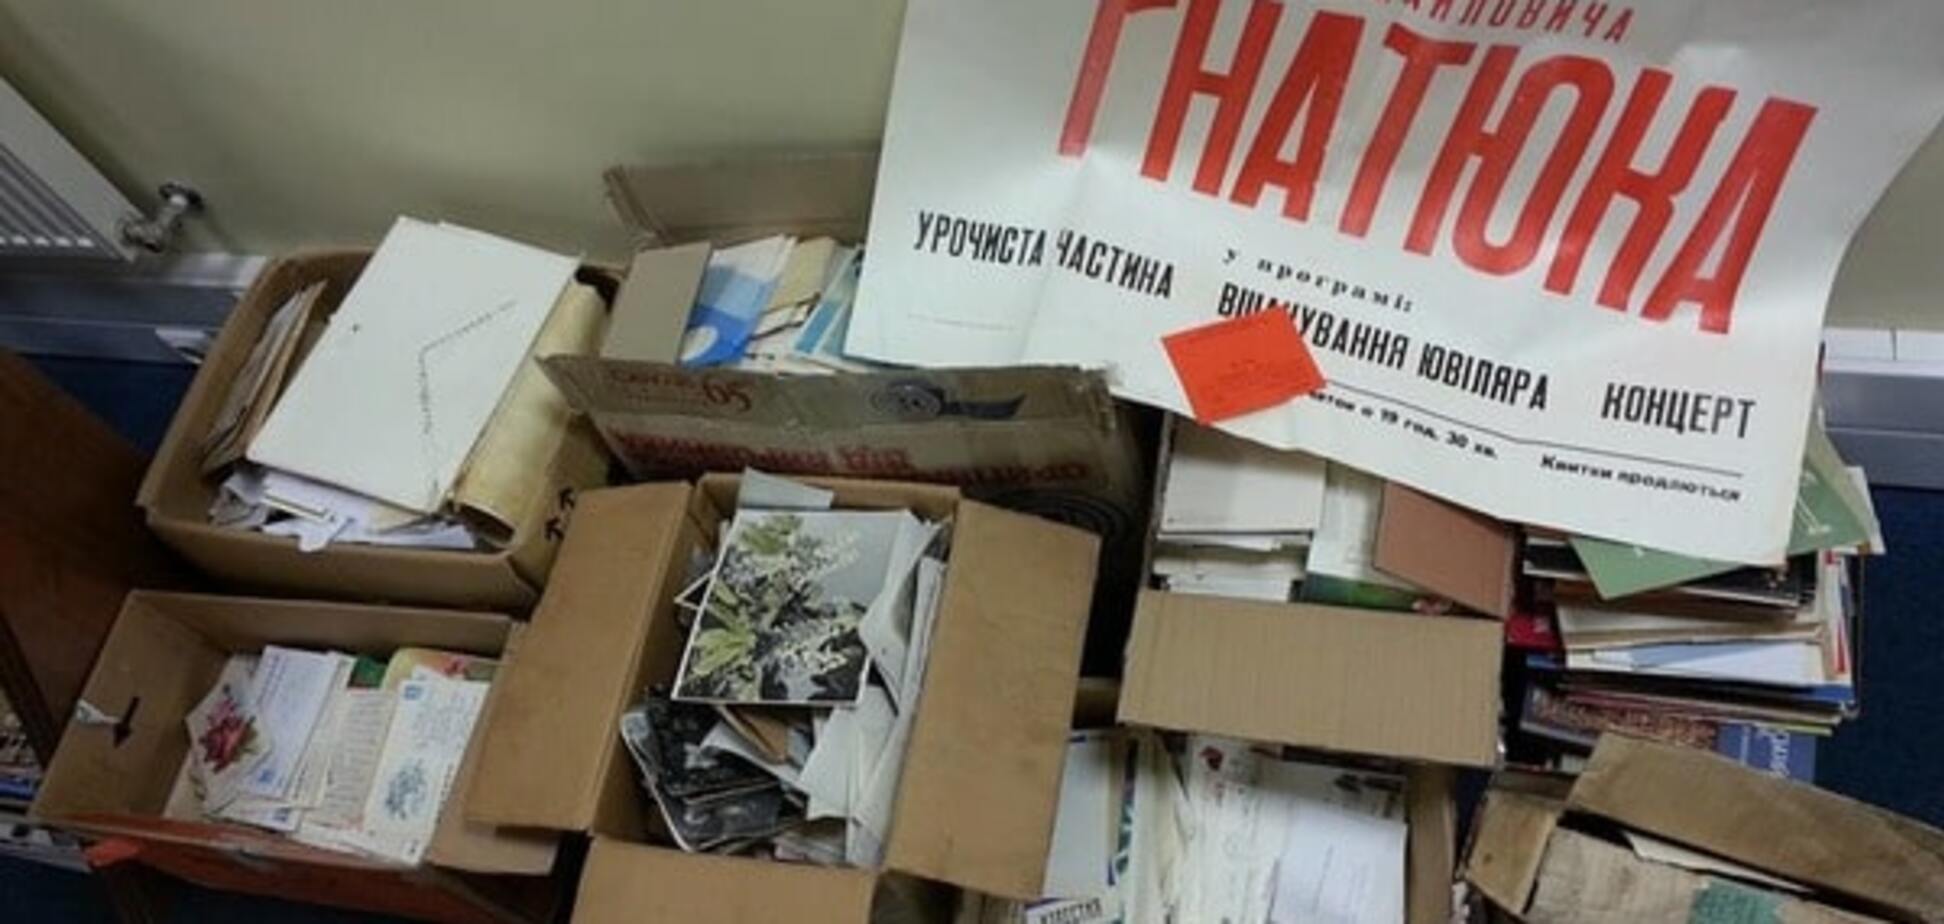 В Киеве выбросили на помойку архив оперного певца Дмитрия Гнатюка